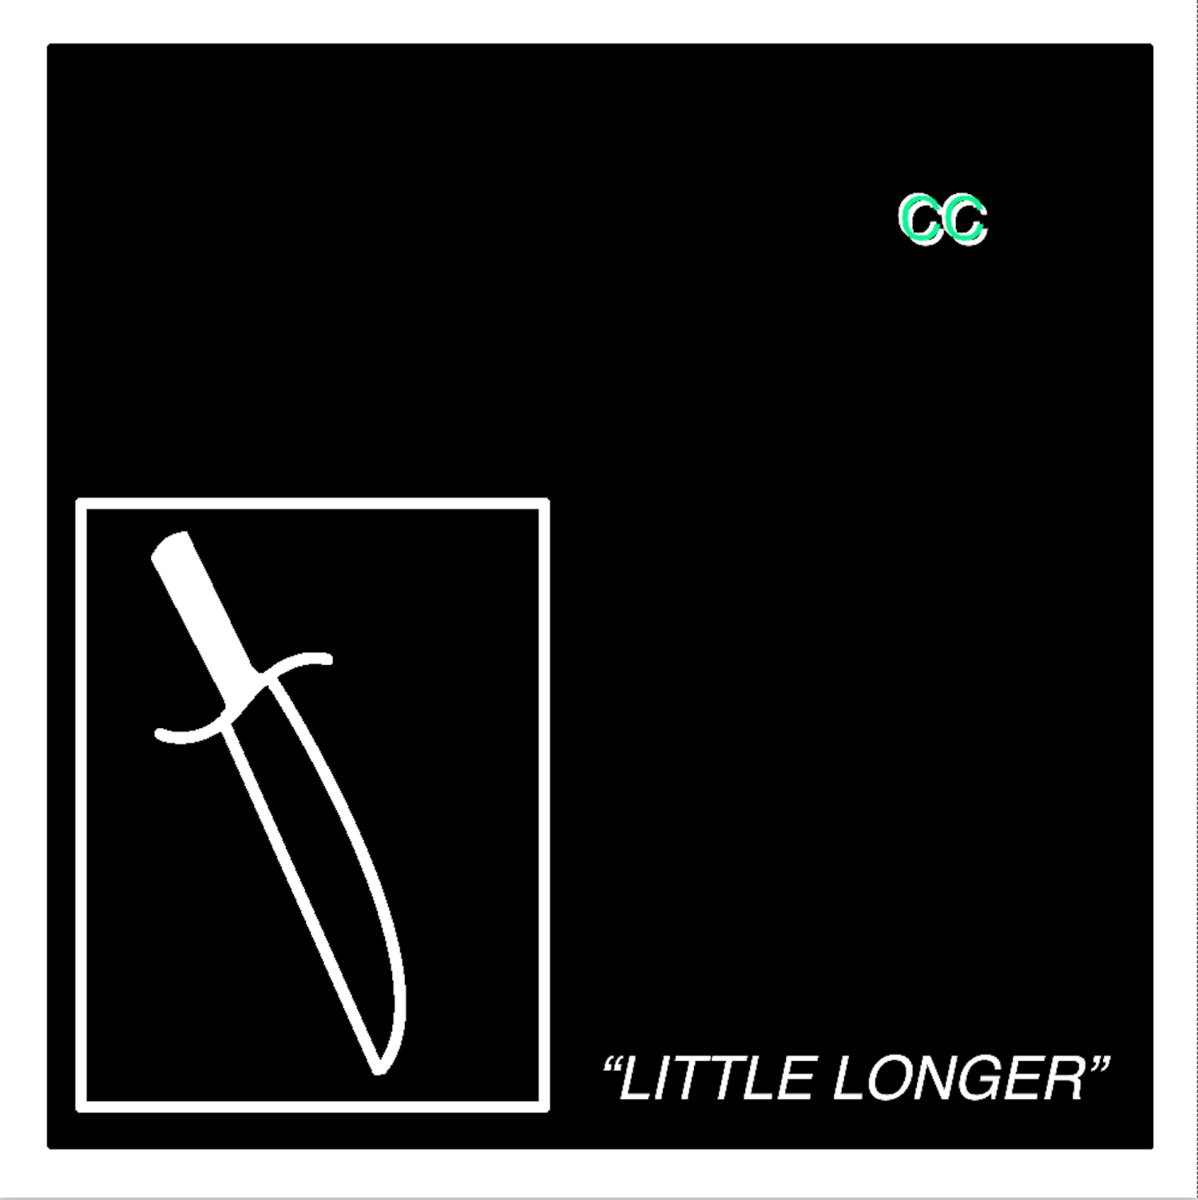 Album Art for "Little Longer" by Carpet City